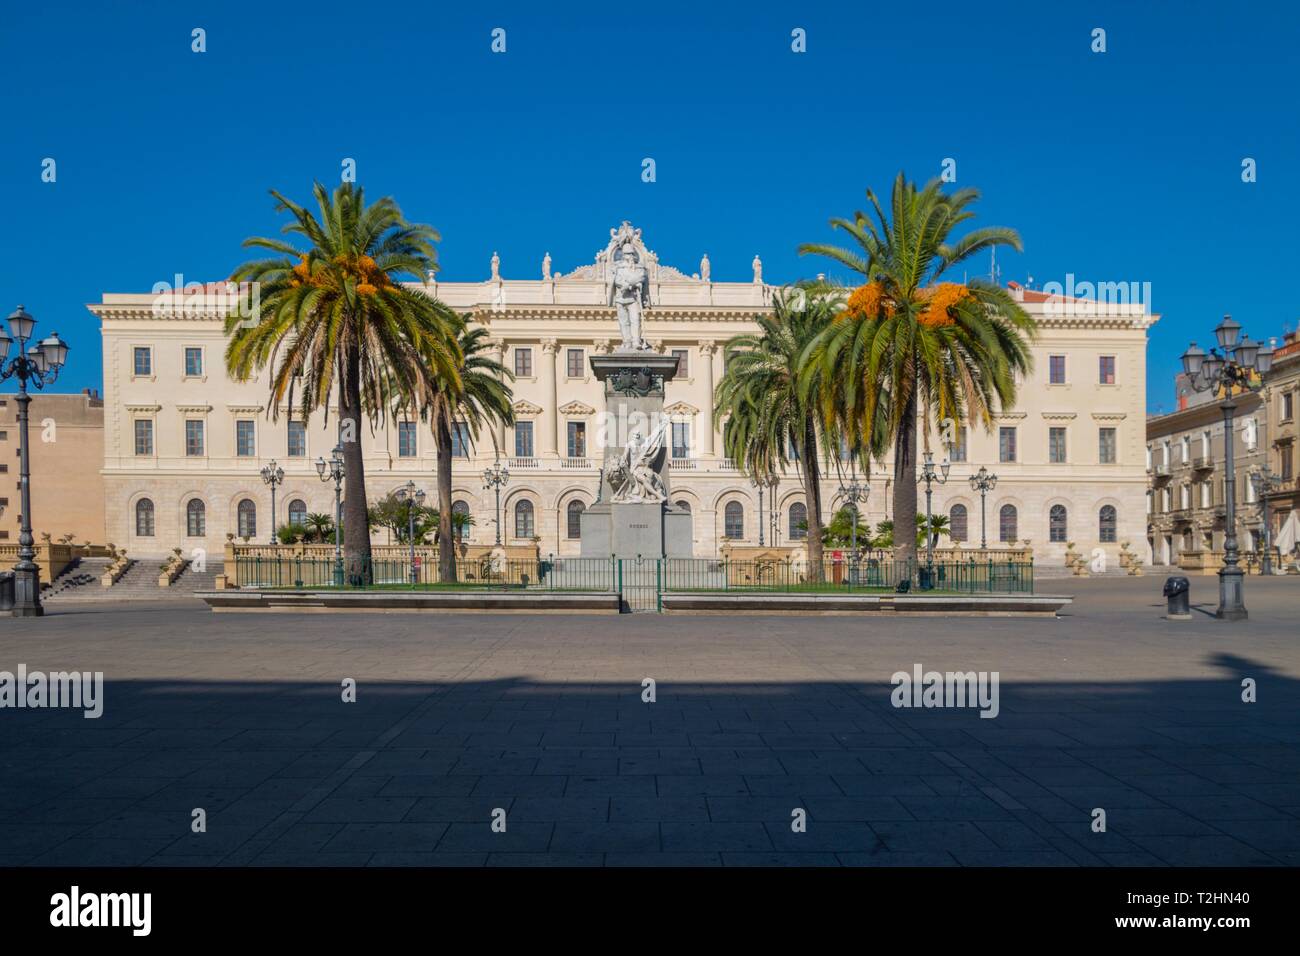 Palazzo della Provincia in the town square Piazza d'Italia, Sassari, Sardinia, Italy, Europe Stock Photo